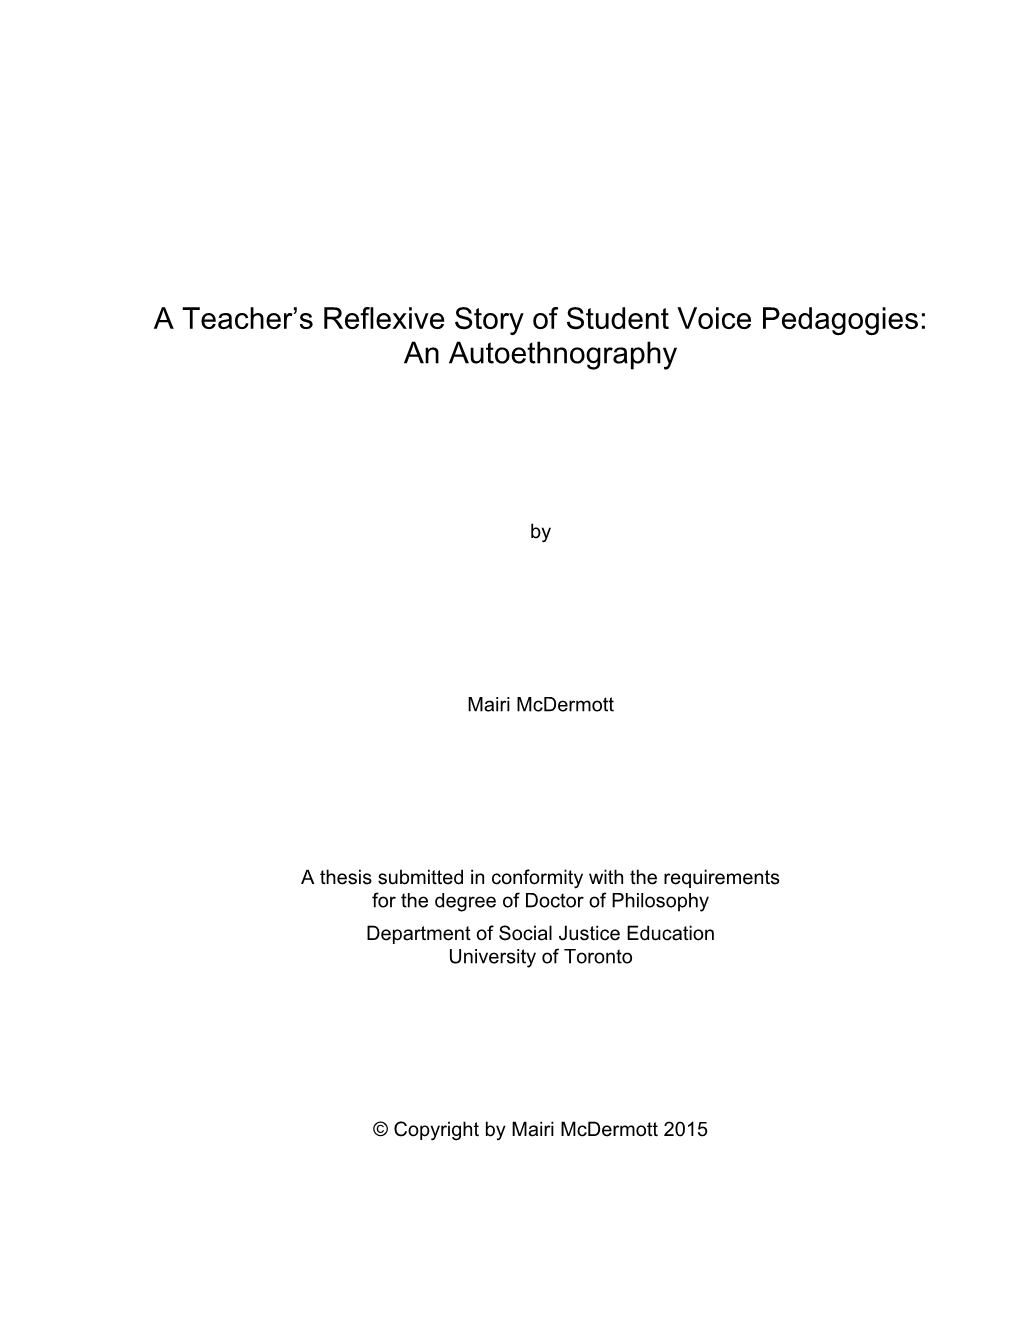 A Teacher's Reflexive Story of Student Voice Pedagogies: An